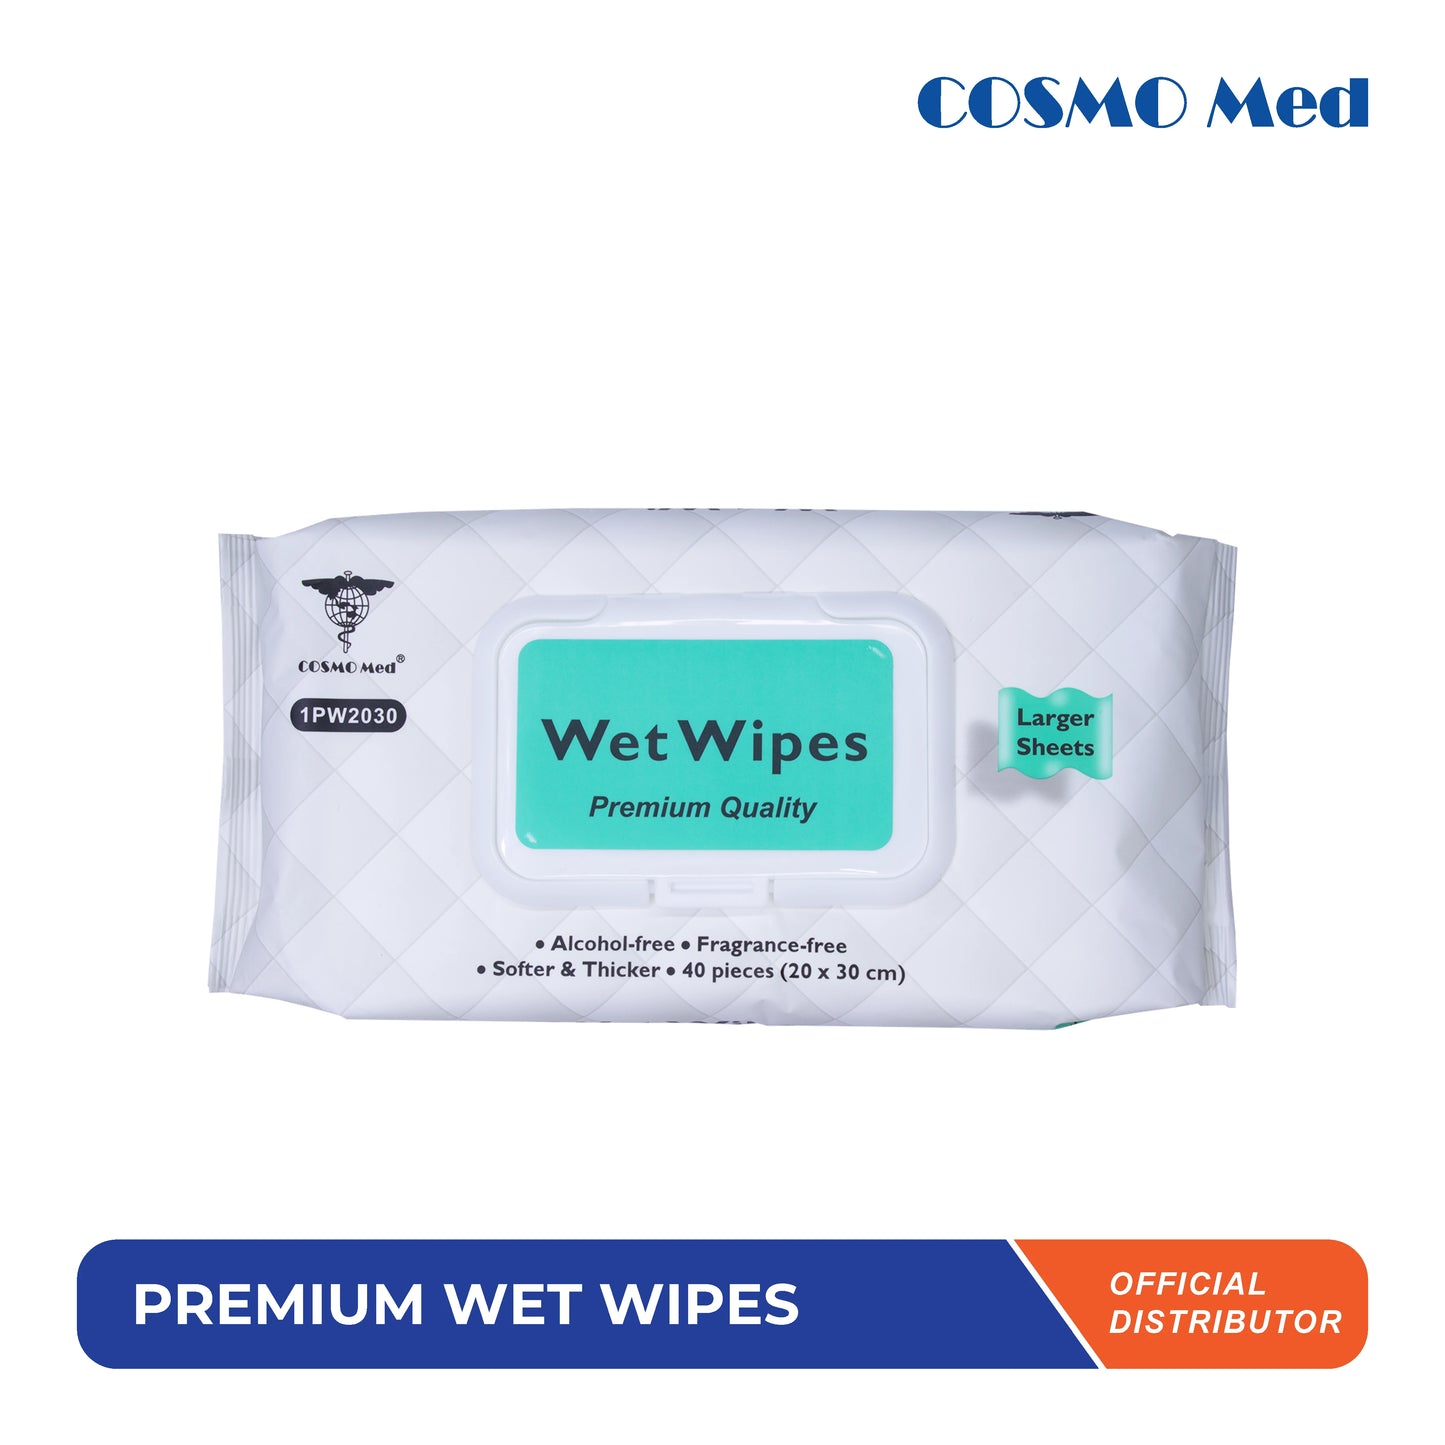 Premium Wet Wipes